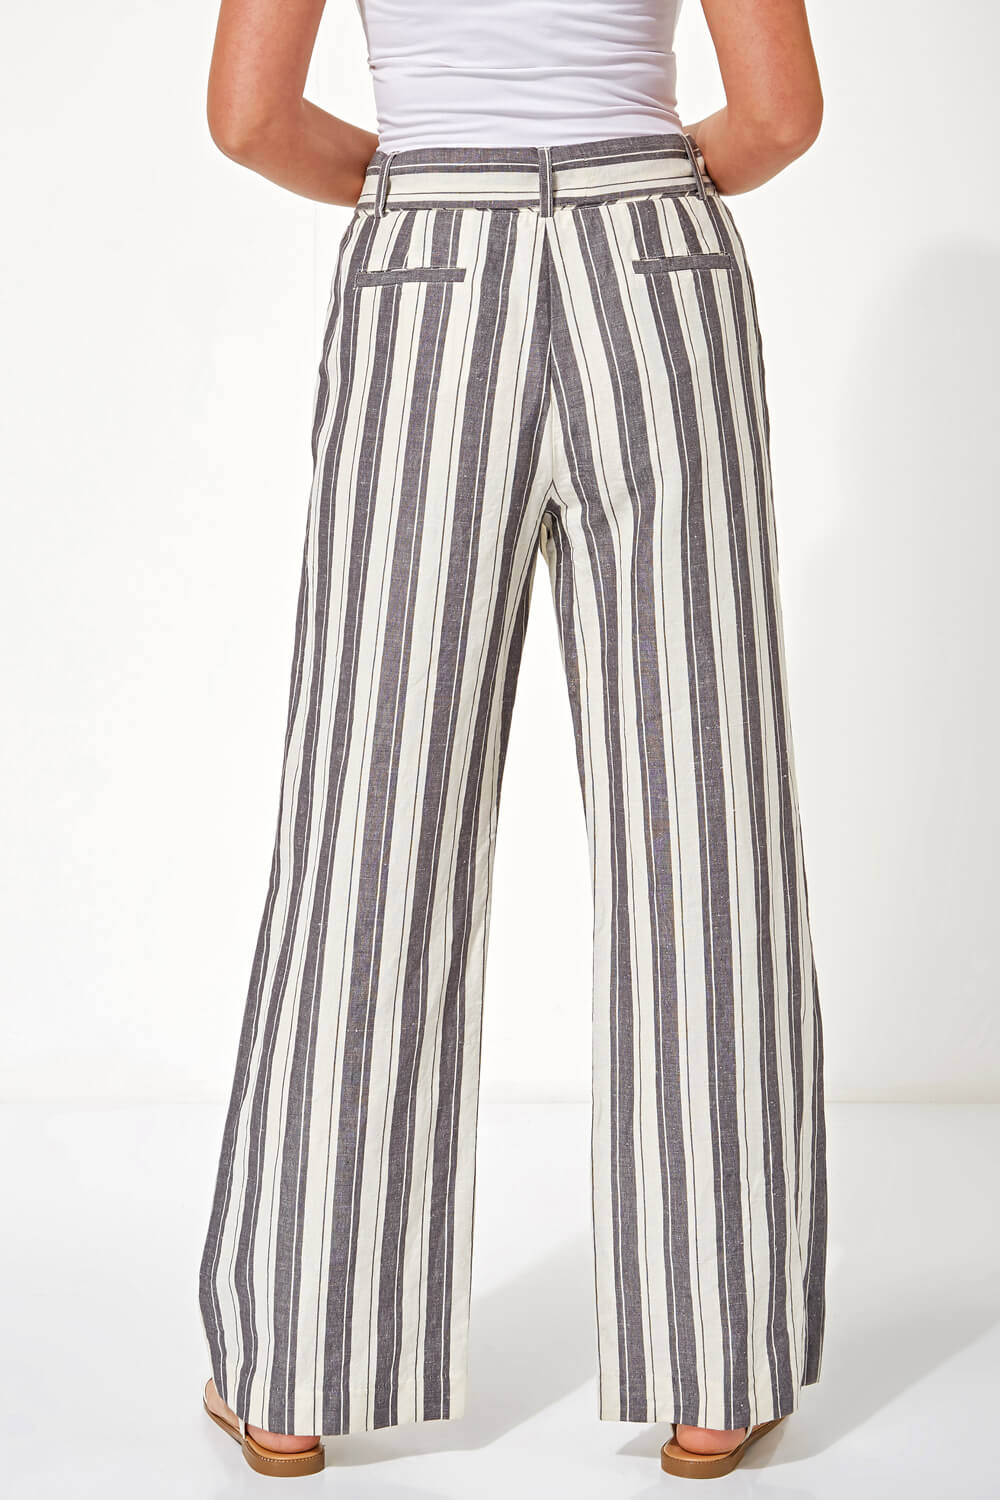 Grey Stripe Linen Wide Leg Trousers, Image 2 of 4